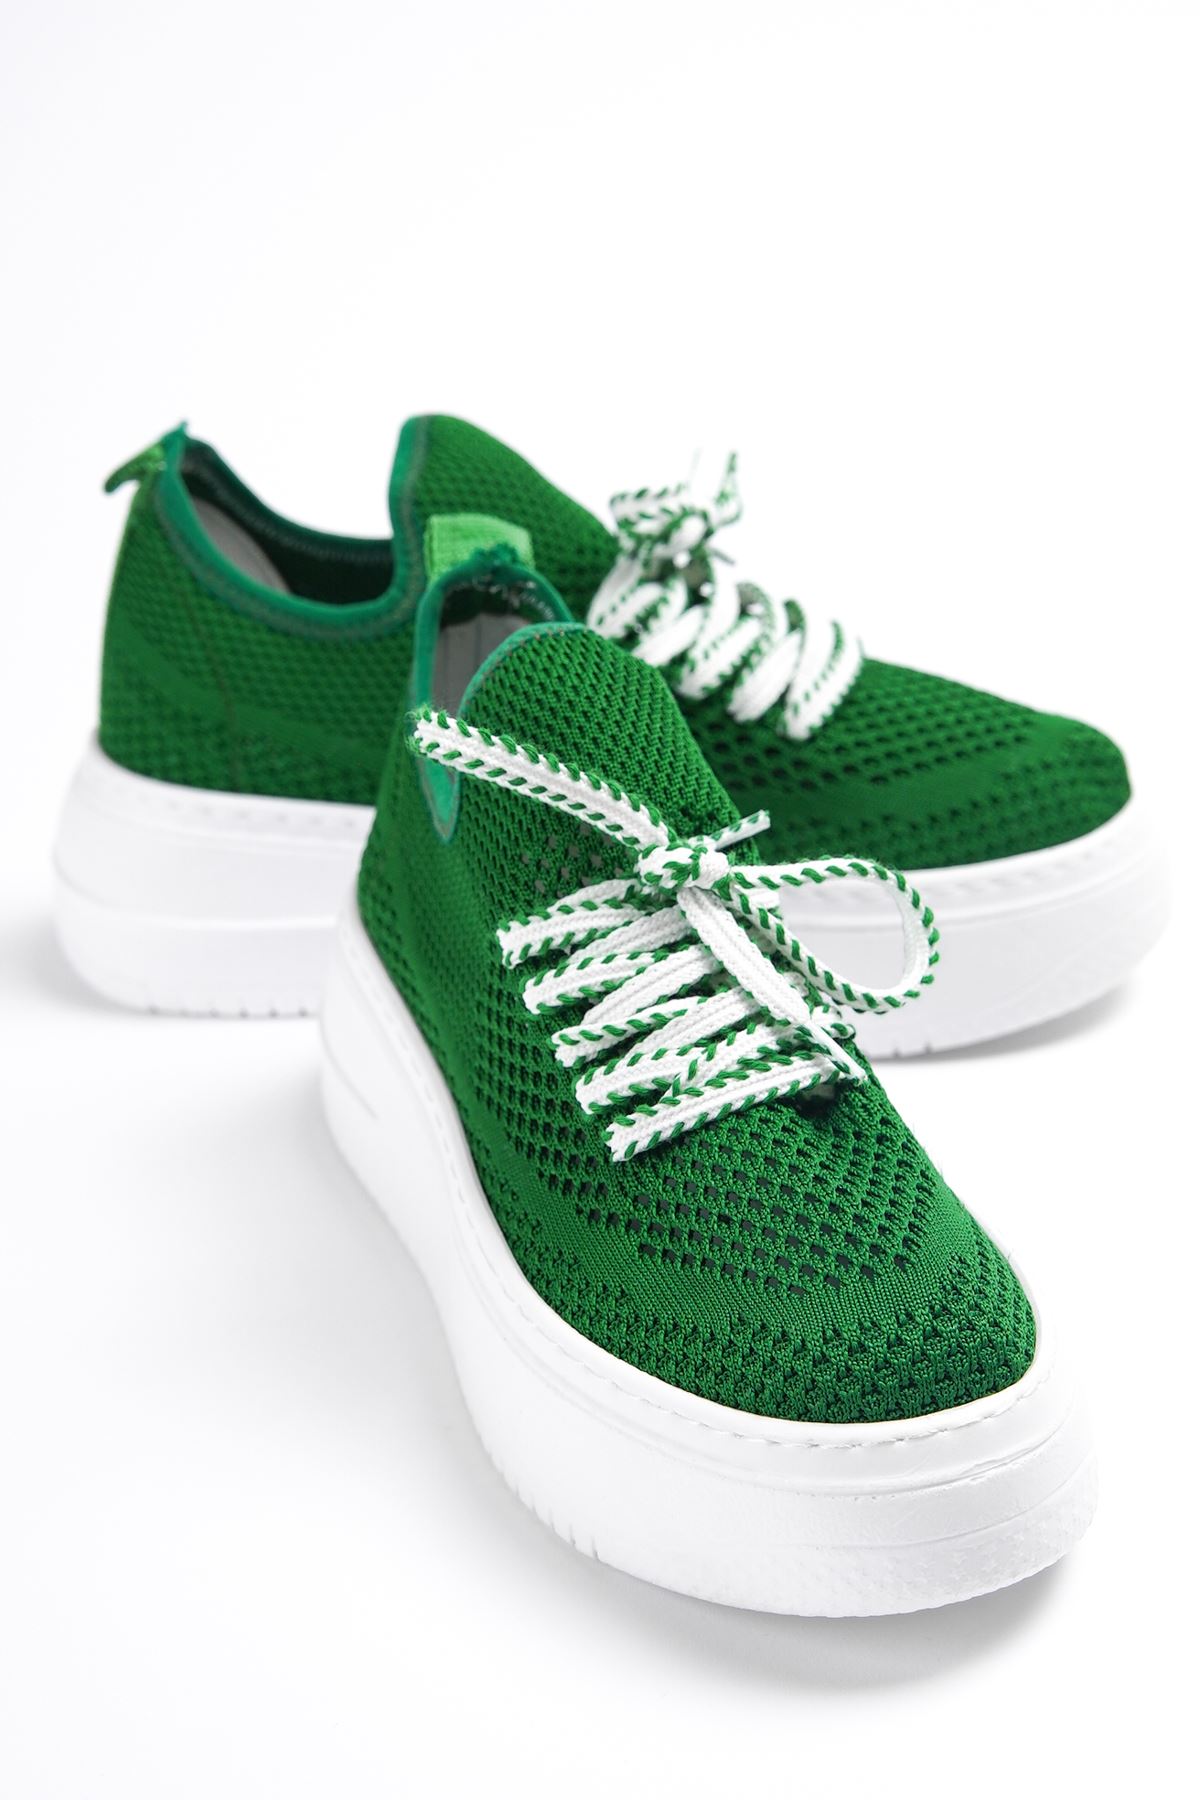 Kadın Joli Triko Bağcıklı Spor Ayakkabı - Yeşil